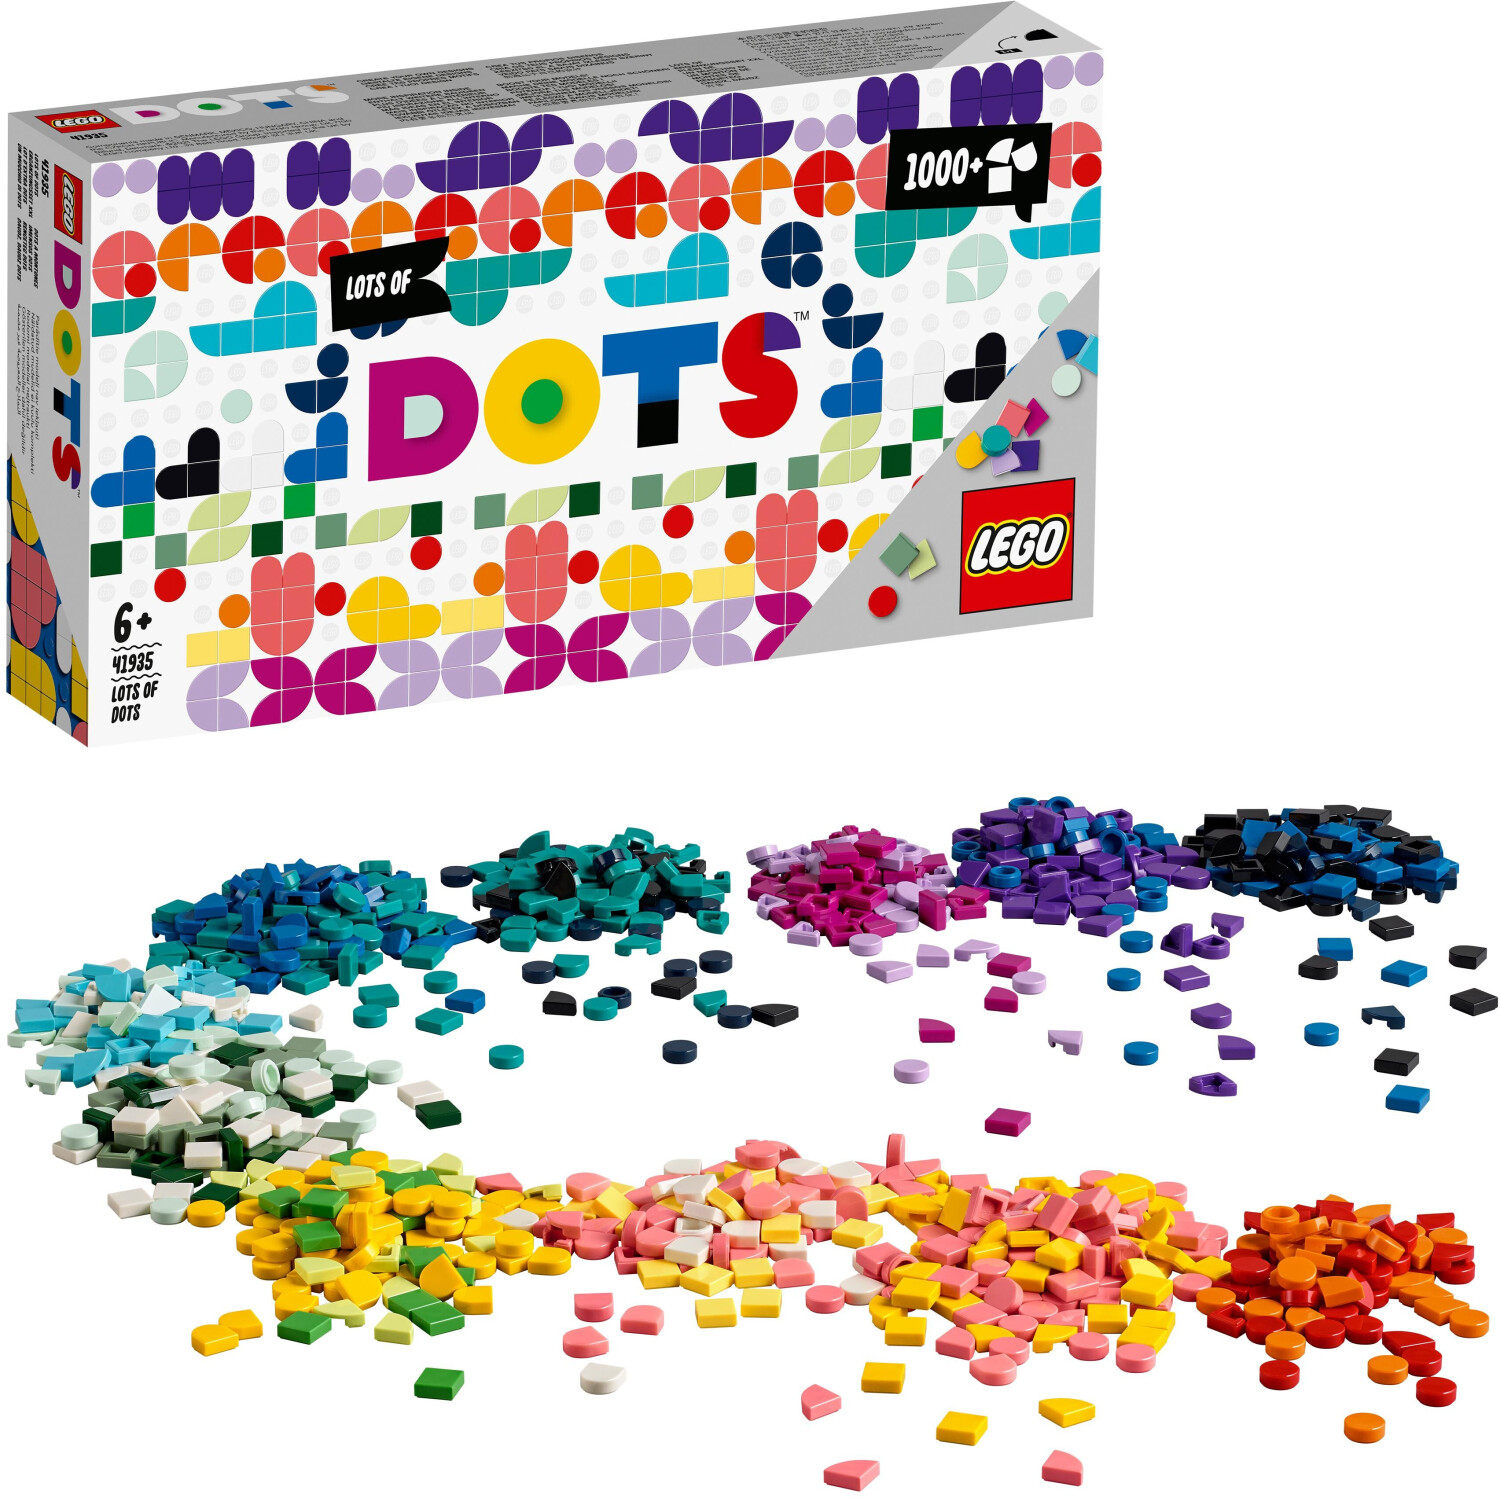 € LEGO Dots (41935) bei Preisvergleich Ergänzungsset ab - XXL 15,99 |